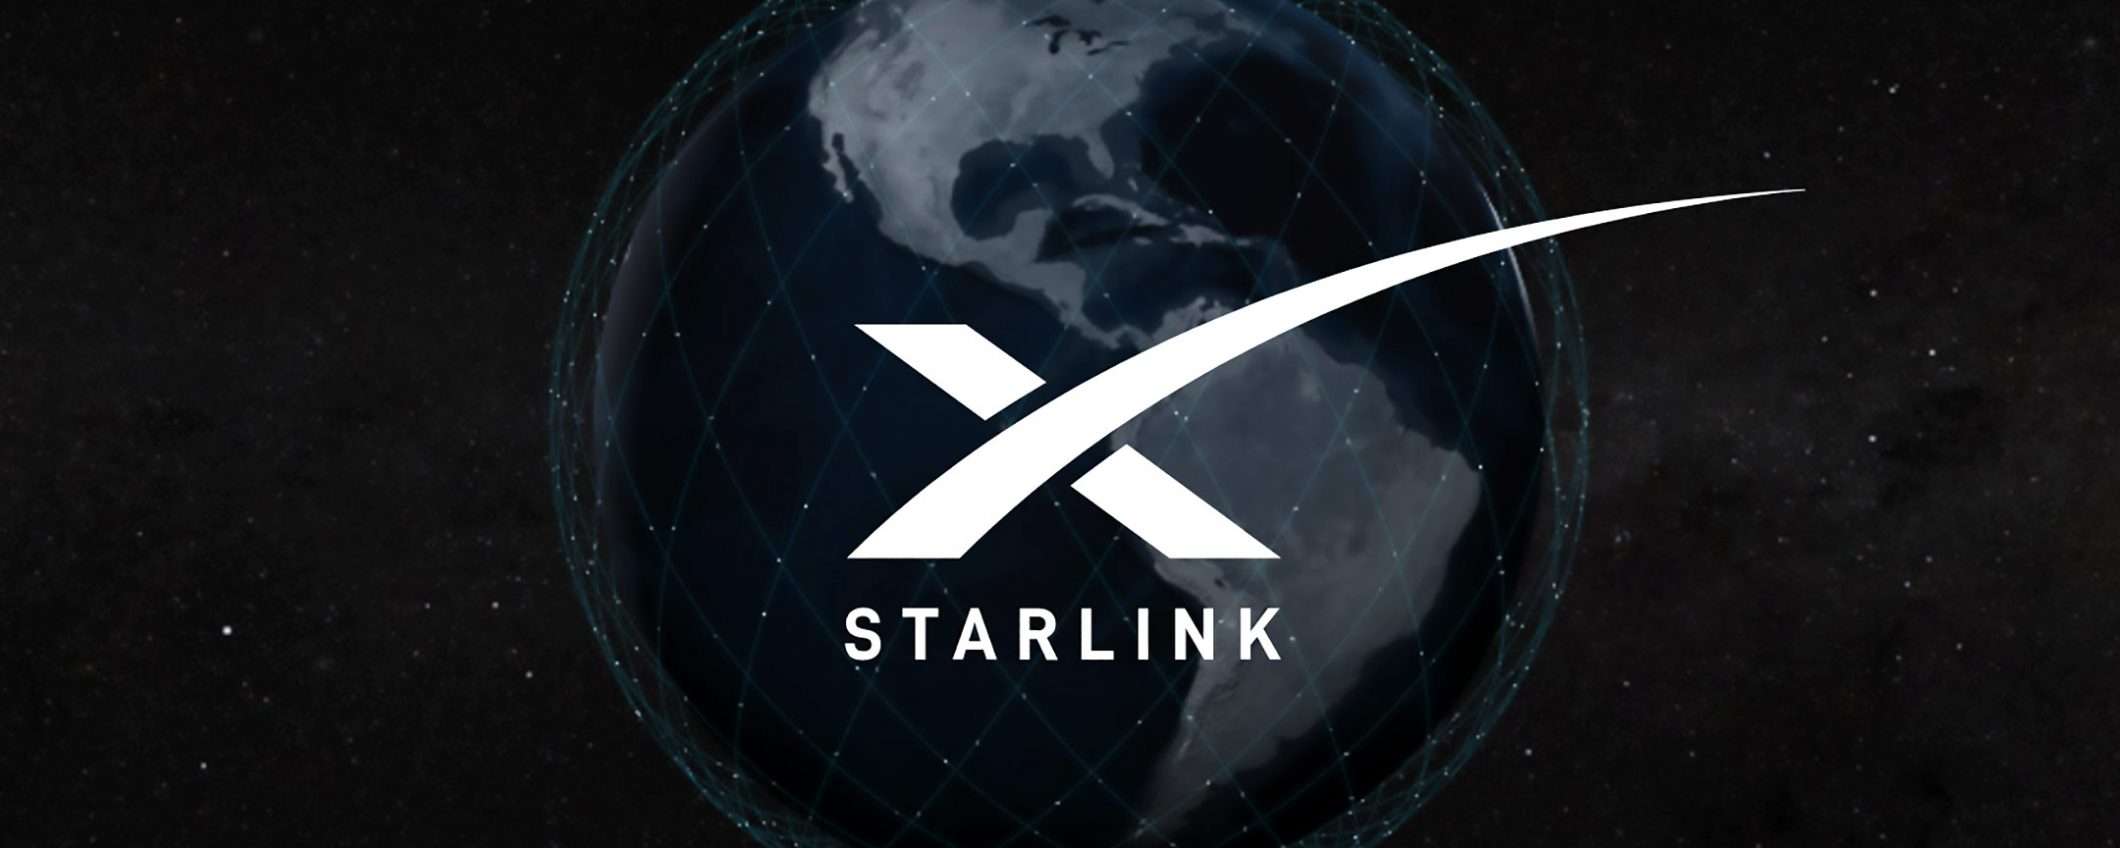 SpaceX-Starlink: nuovi satelliti, lancio in diretta